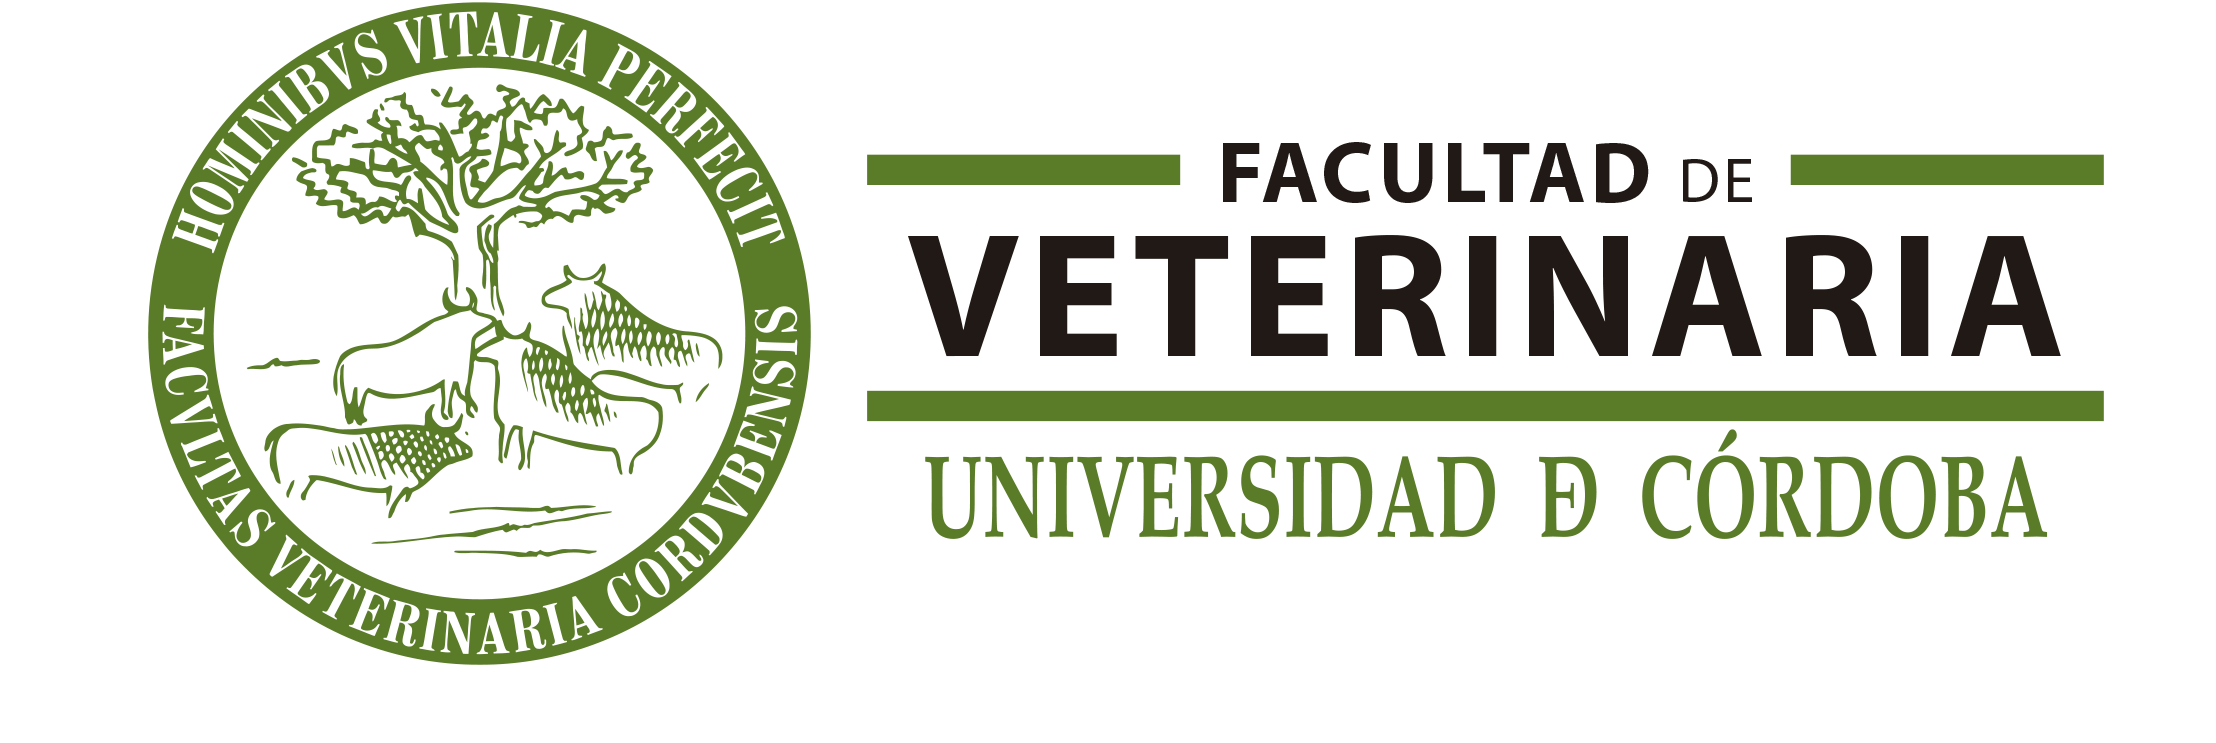 Variaciones Logo UCO Veterinaria II 2